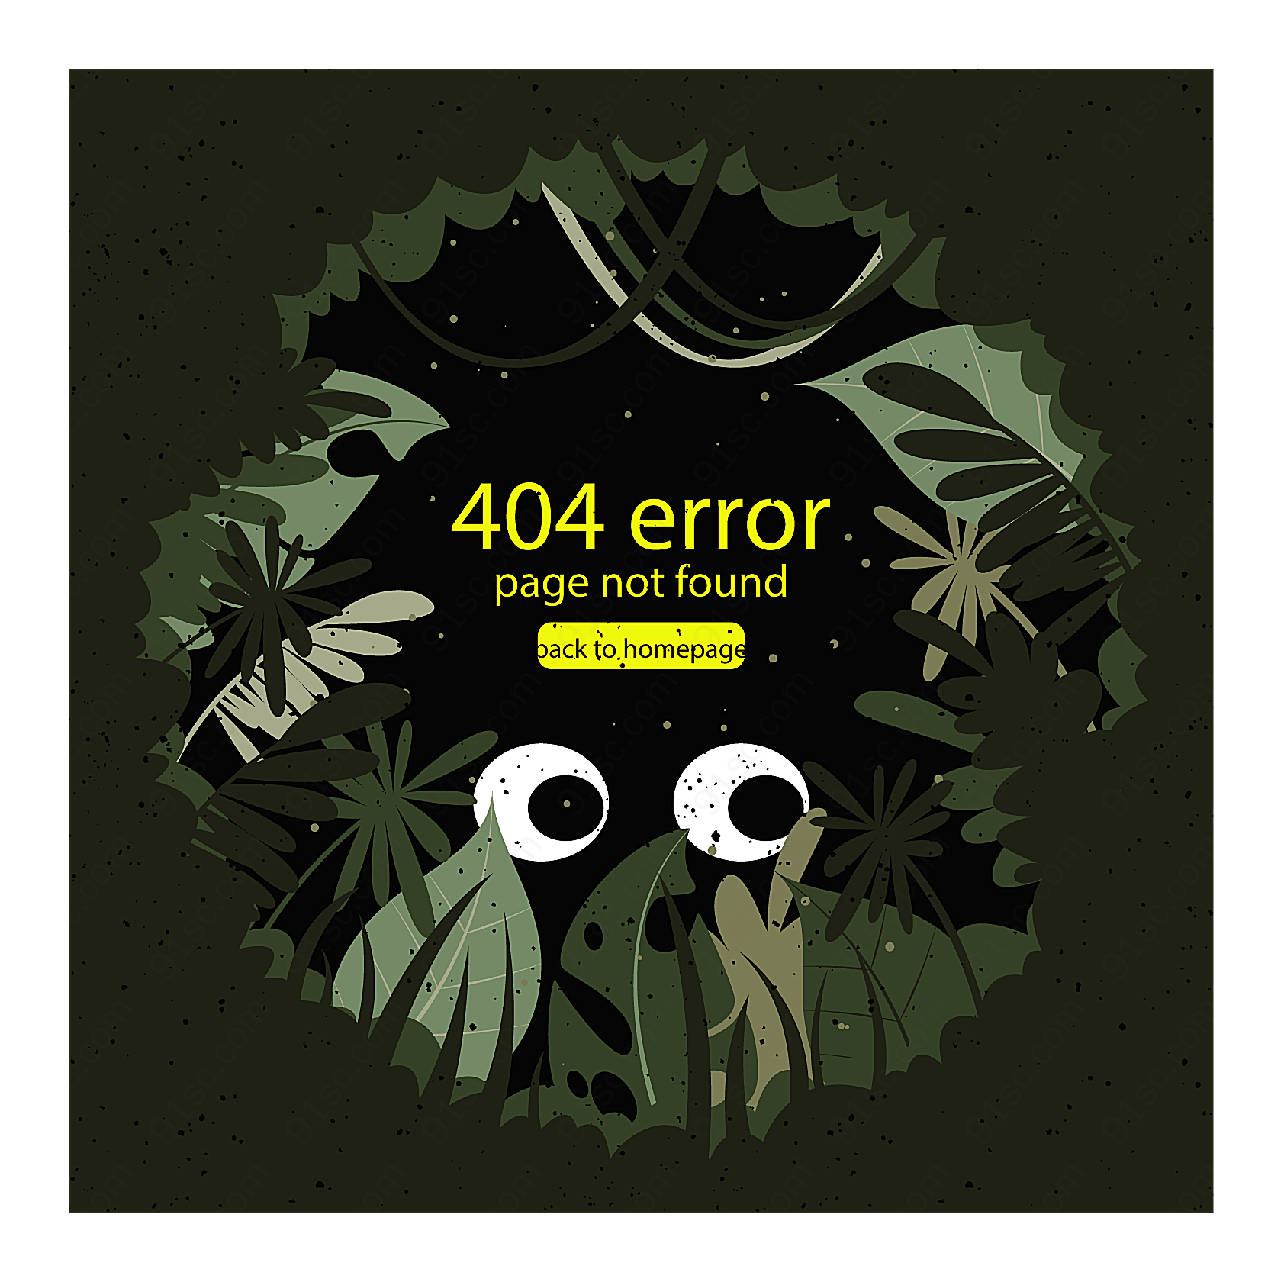 怪兽404错误页平面广告